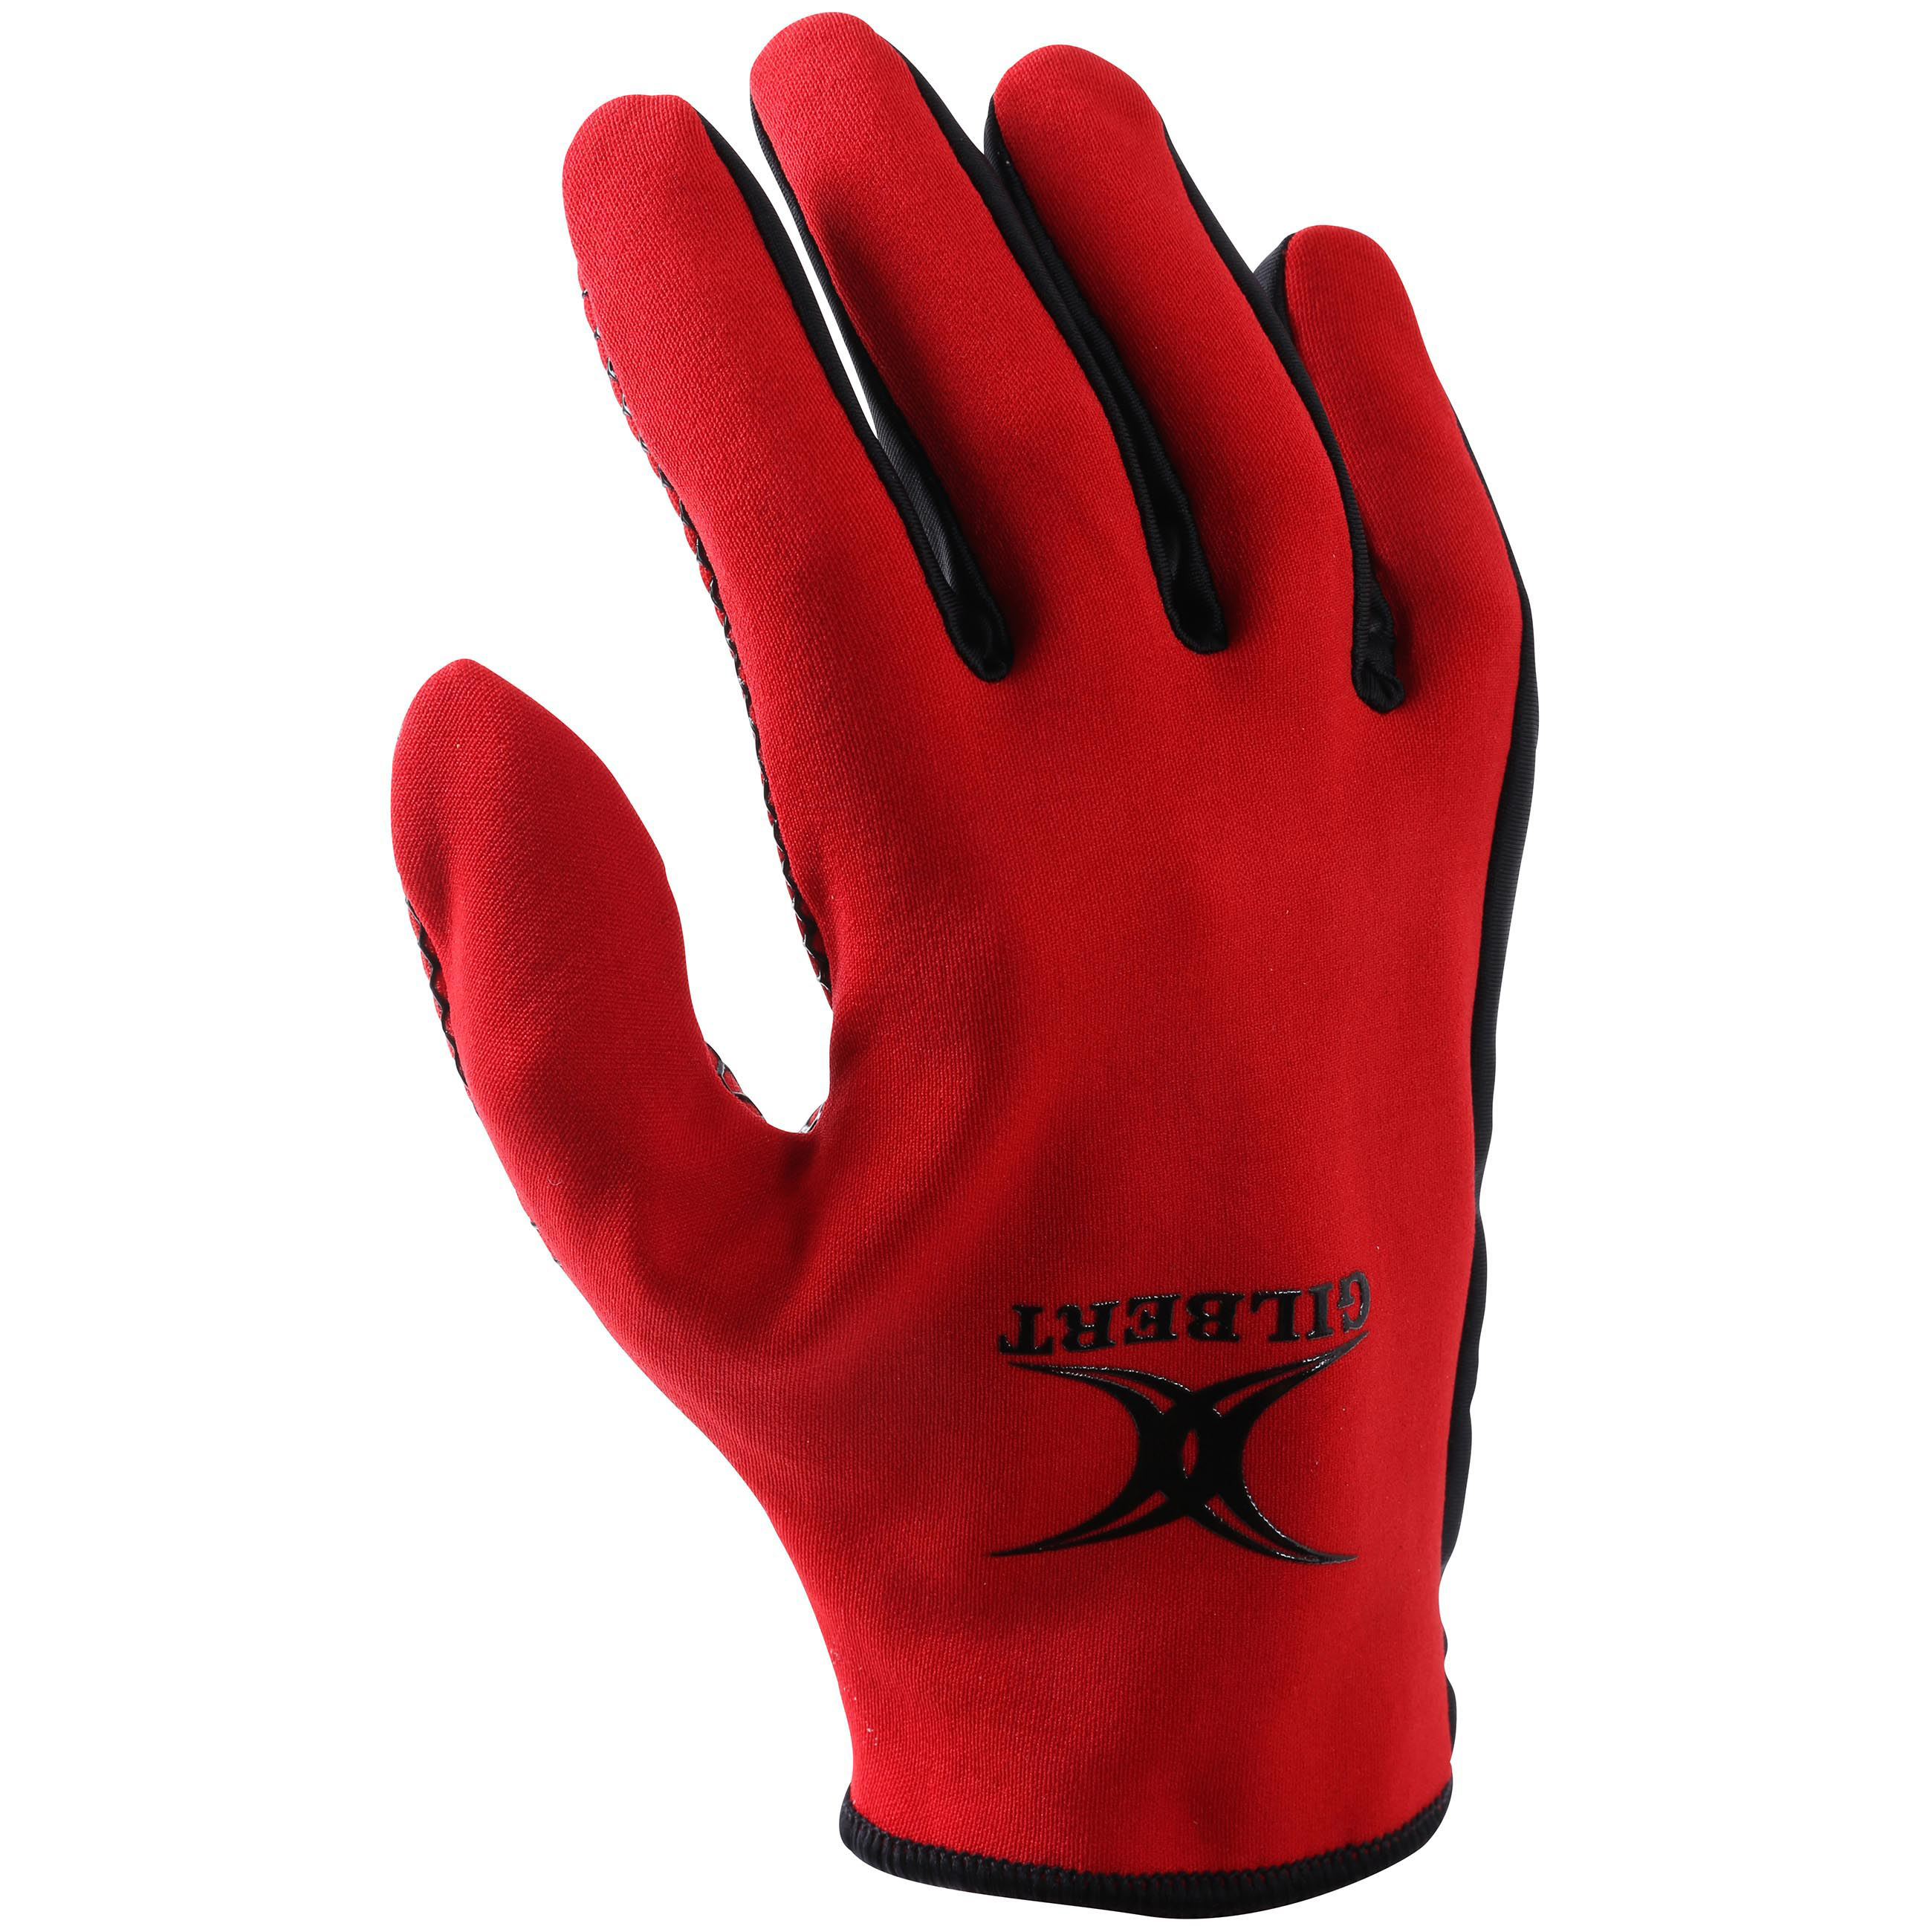 Atomic Training Gloves